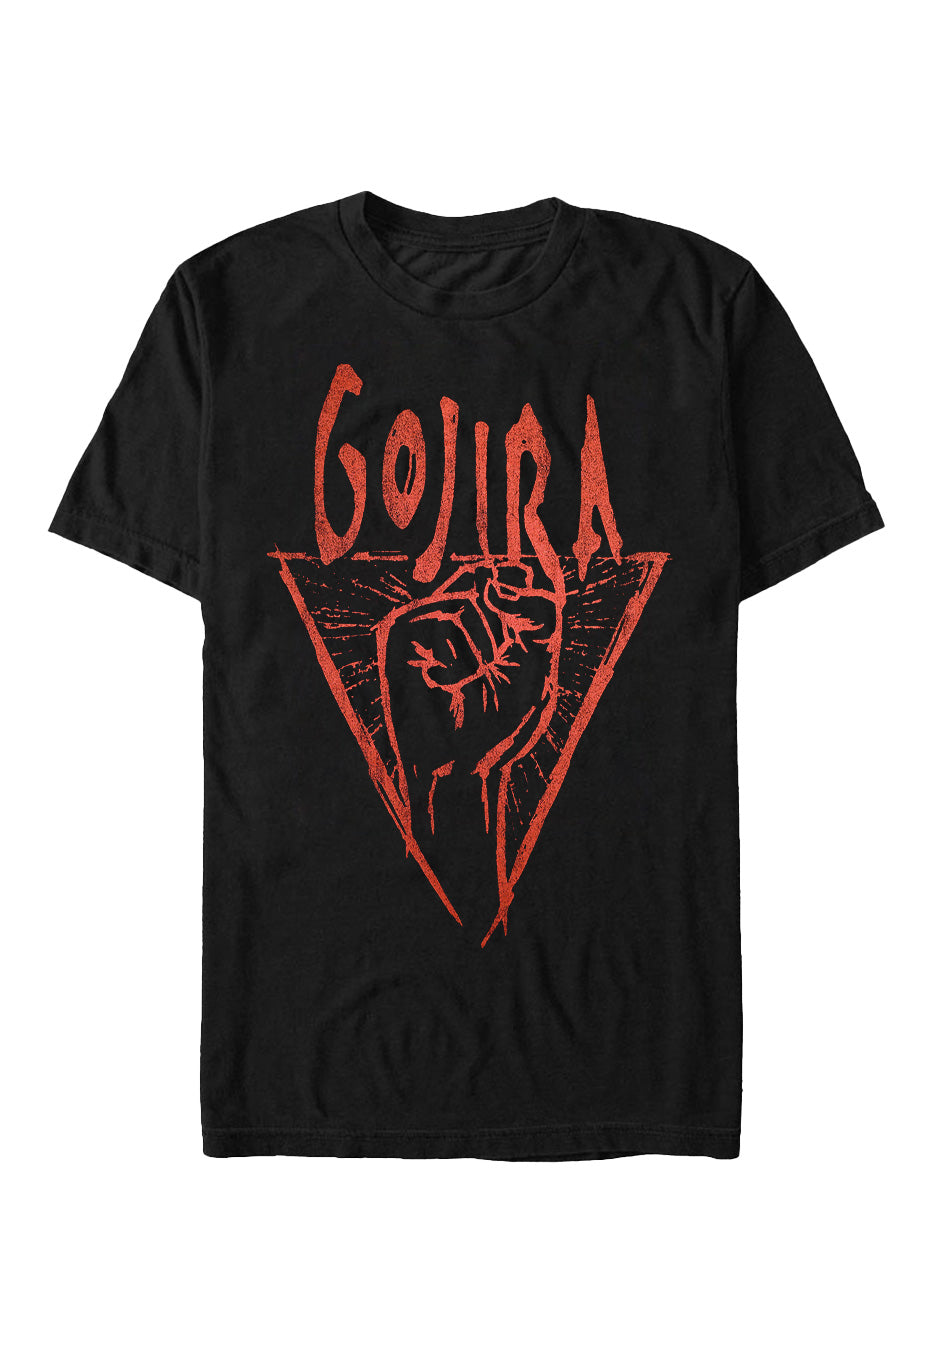 Gojira - Power Glove - T-Shirt